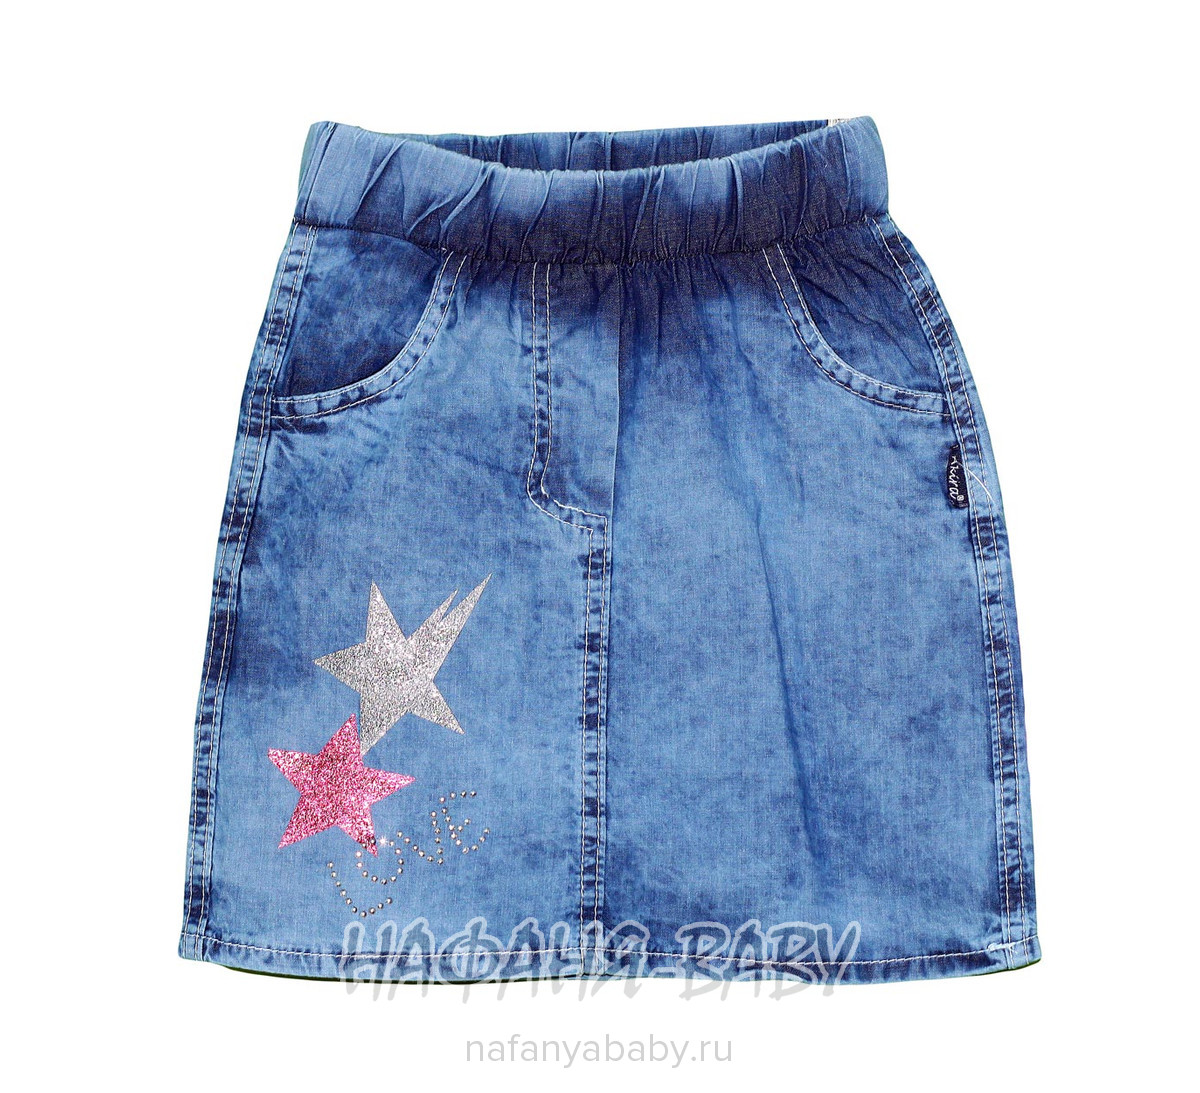 Детская джинсовая юбка AKIRA арт: 2628, 5-9 лет, 1-4 года, оптом Турция